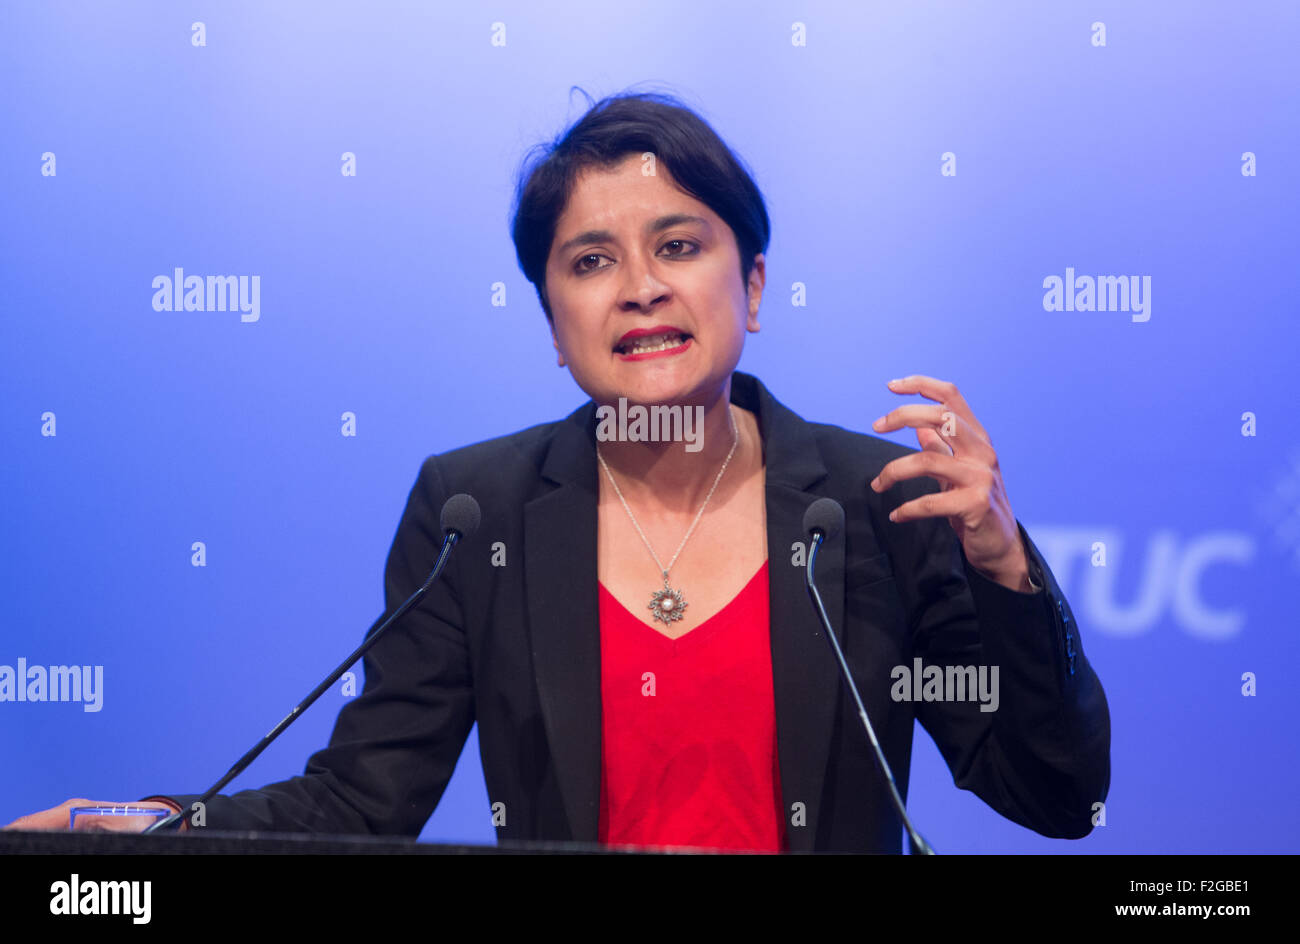 Shami Chakrabati s'exprimant lors d'une conférence à propos de la liberté et des droits de l'homme Banque D'Images